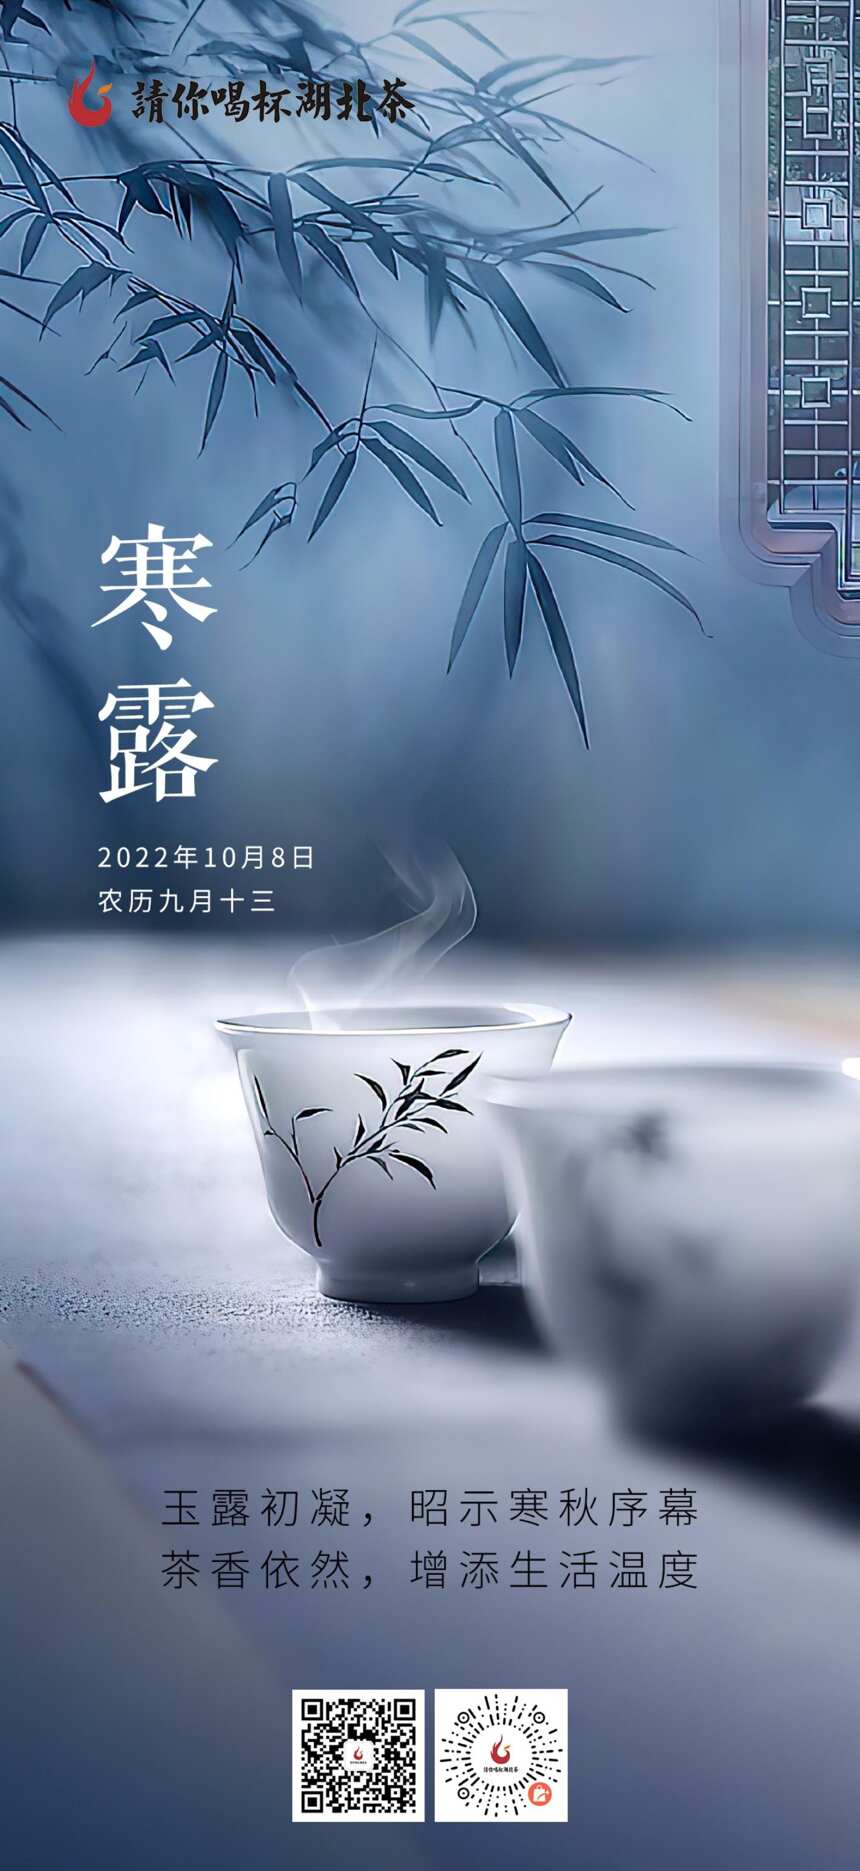 「“鄂的茶”湖北茶礼」寒露起，茶正宜，为生活增添温度